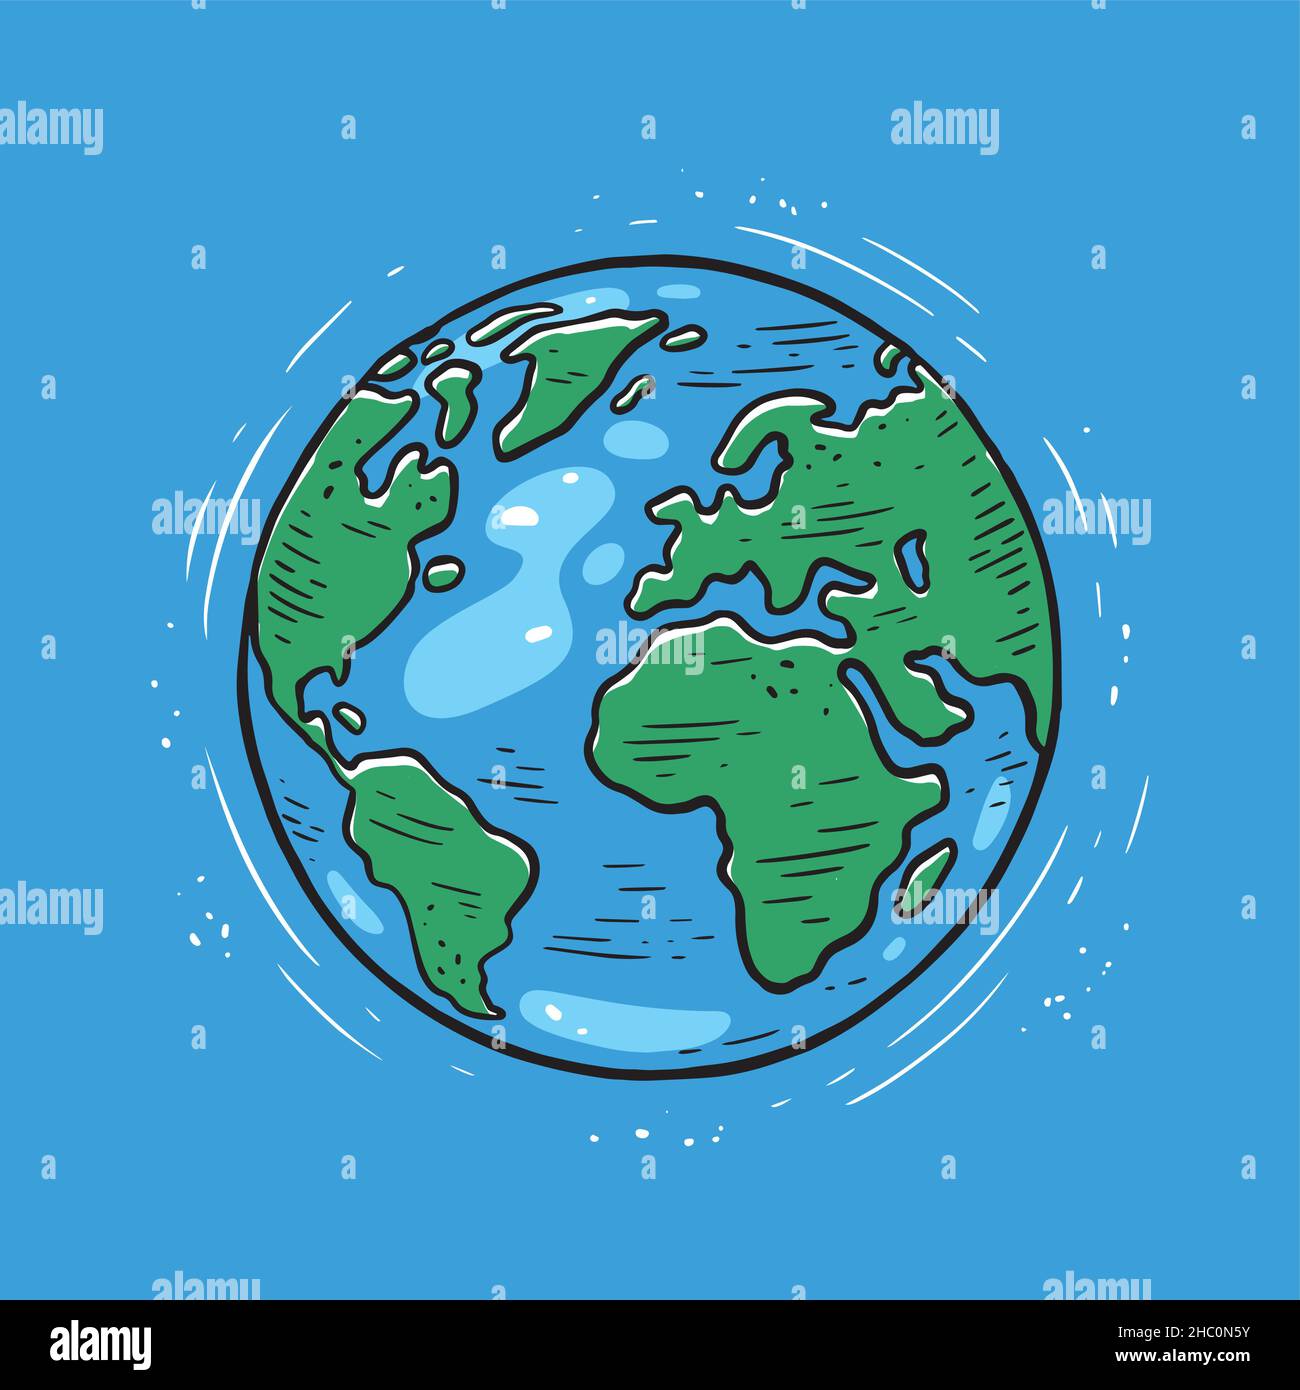 Planète Terre.Carte du monde ou globe dans le style de dessin animé.Environnement, écologie concept Illustration de Vecteur